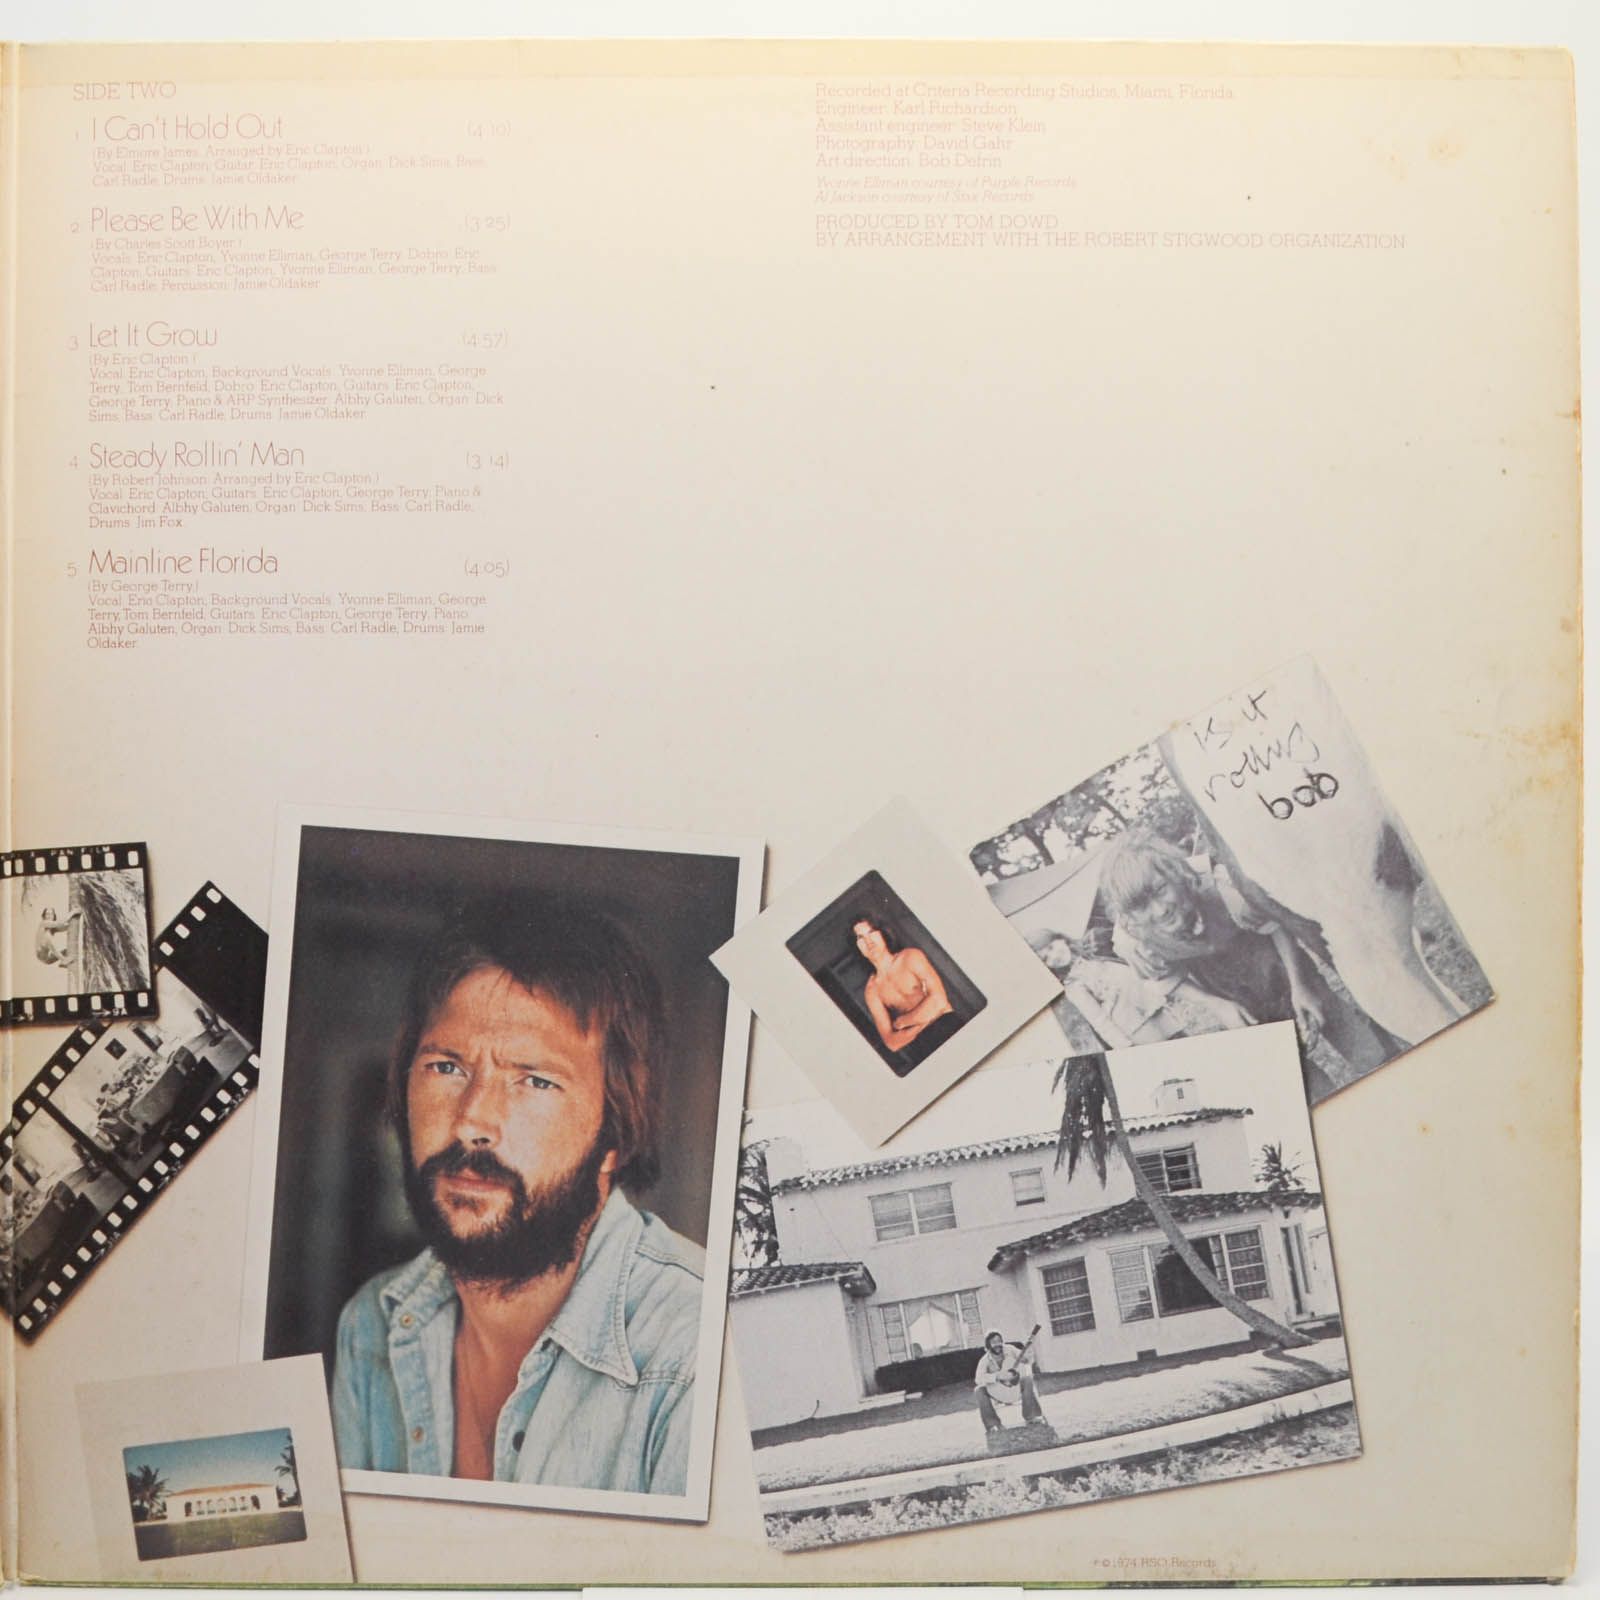 Eric Clapton — 461 Ocean Boulevard, 1974